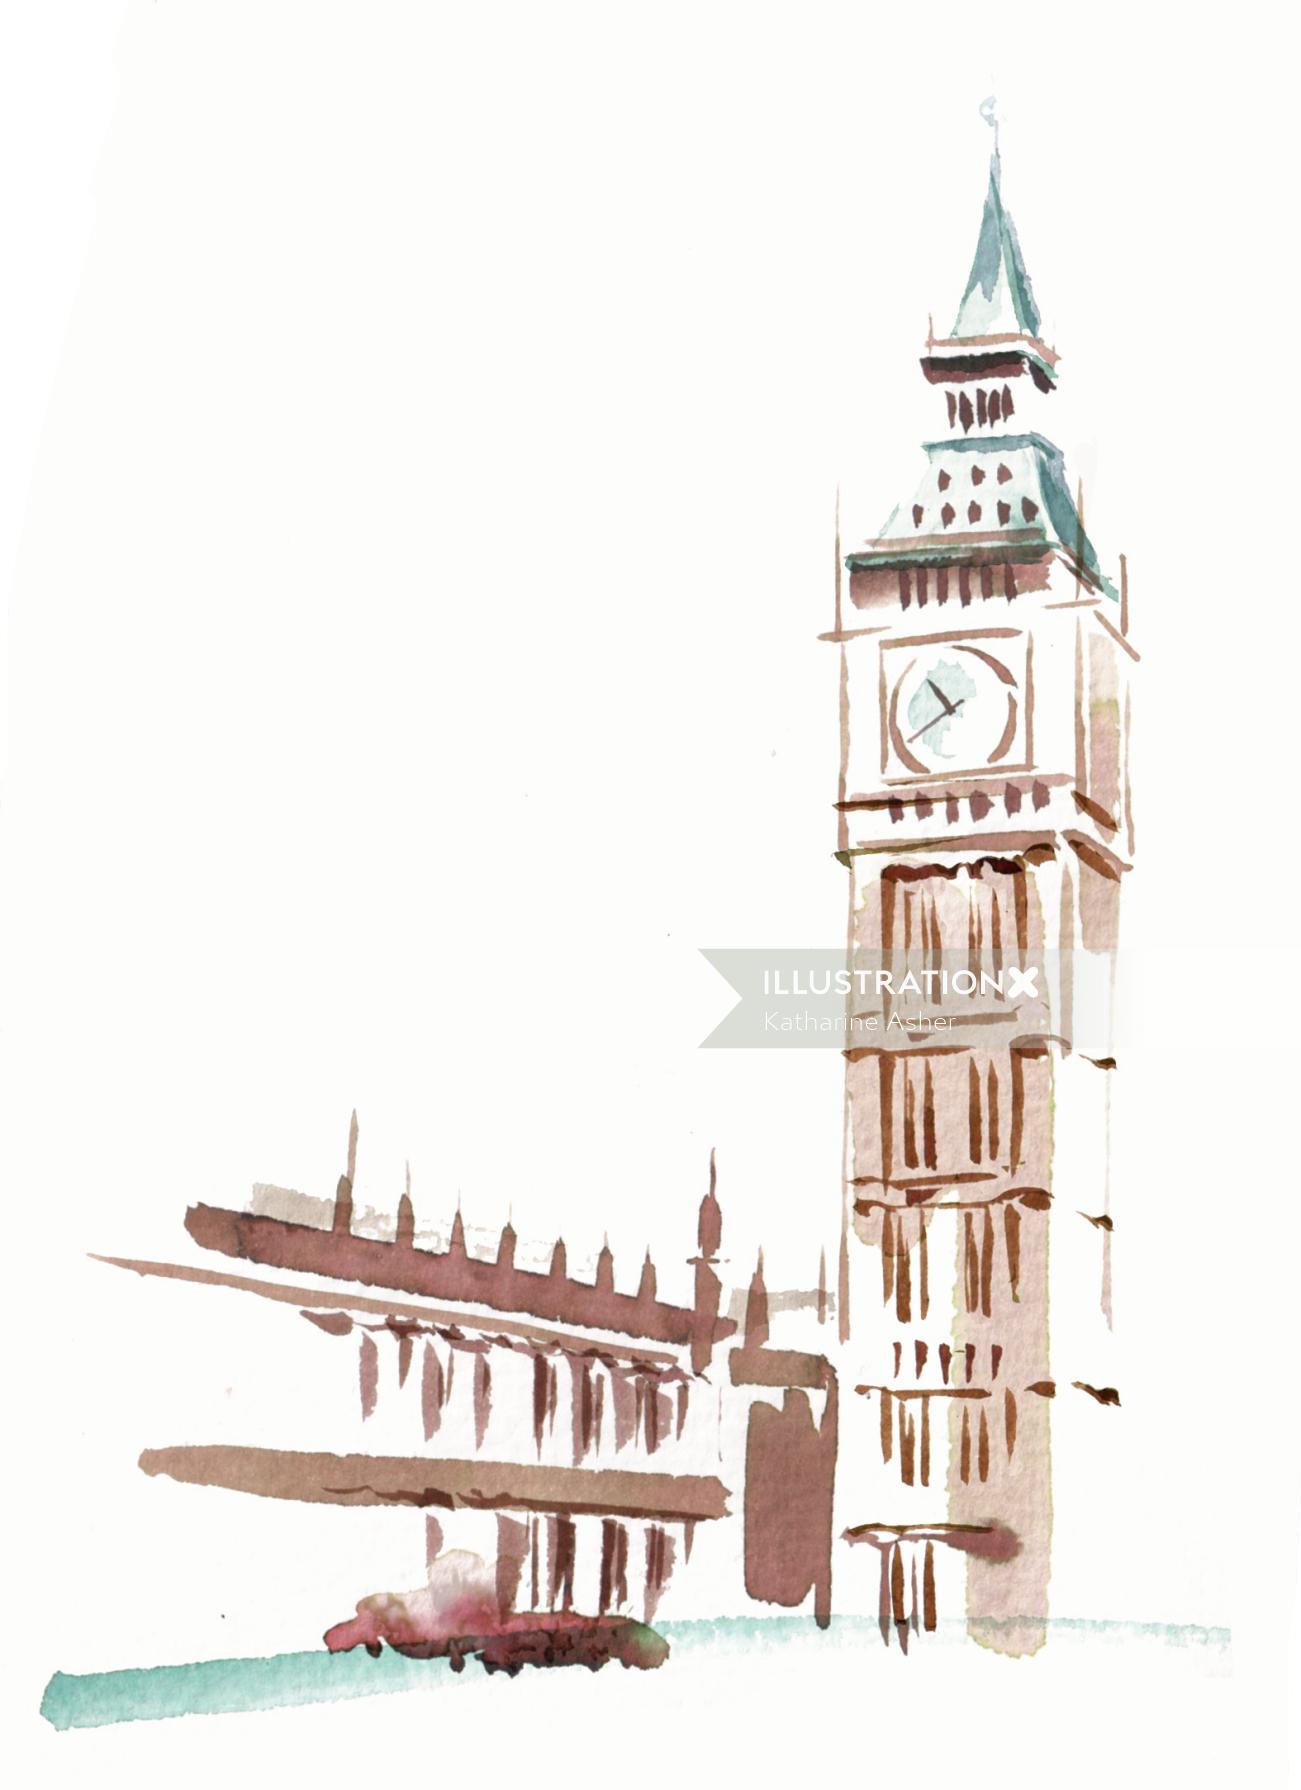 Ilustración de la torre del reloj por Katharine Asher